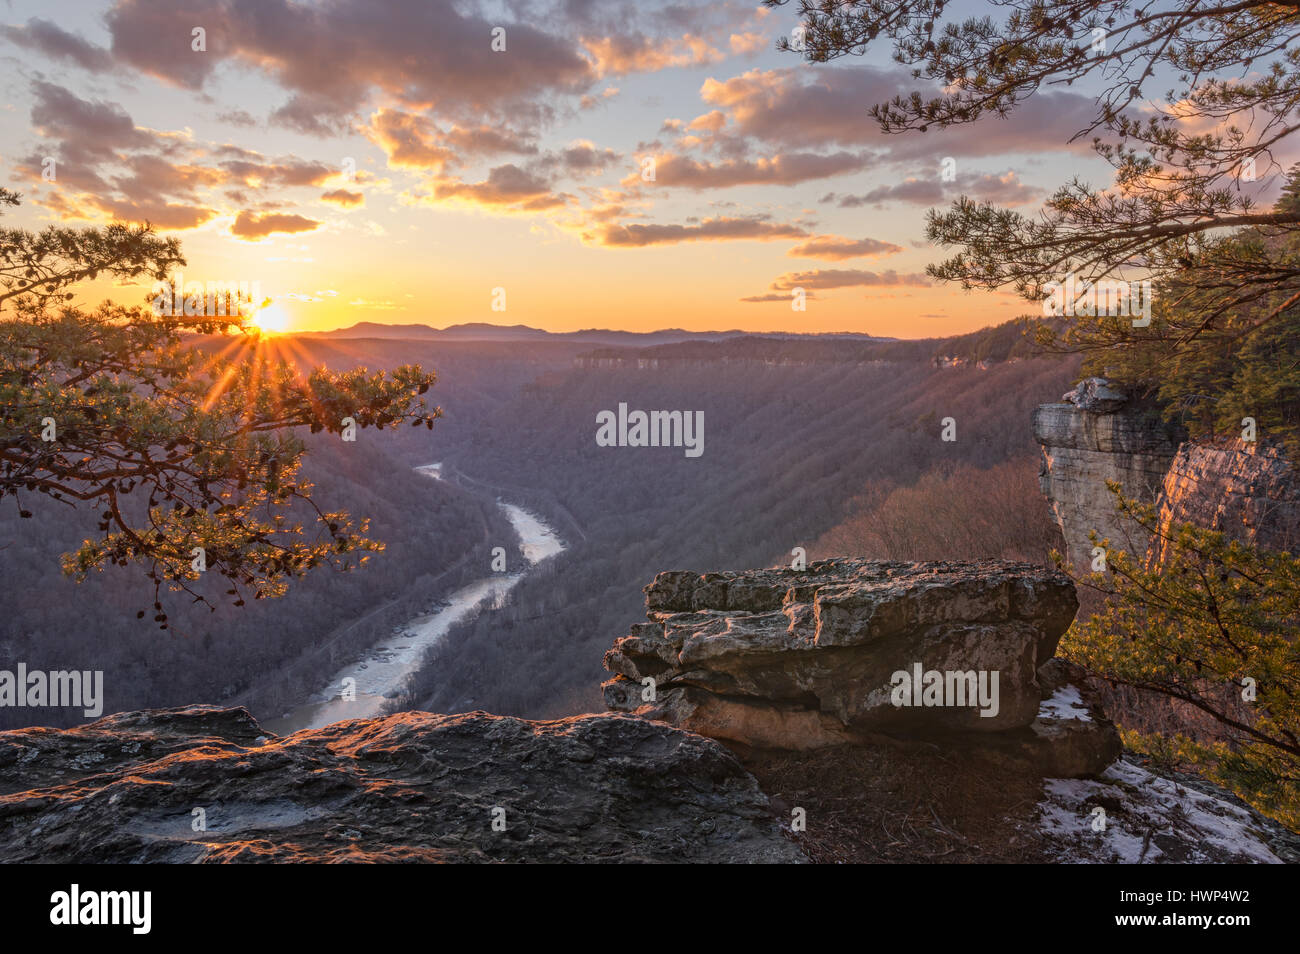 Le rendement des arbres à l'hiver, et le soleil qui met en lumière l'craggy rim et les conifères de la New River Gorge en Virginie occidentale. Banque D'Images